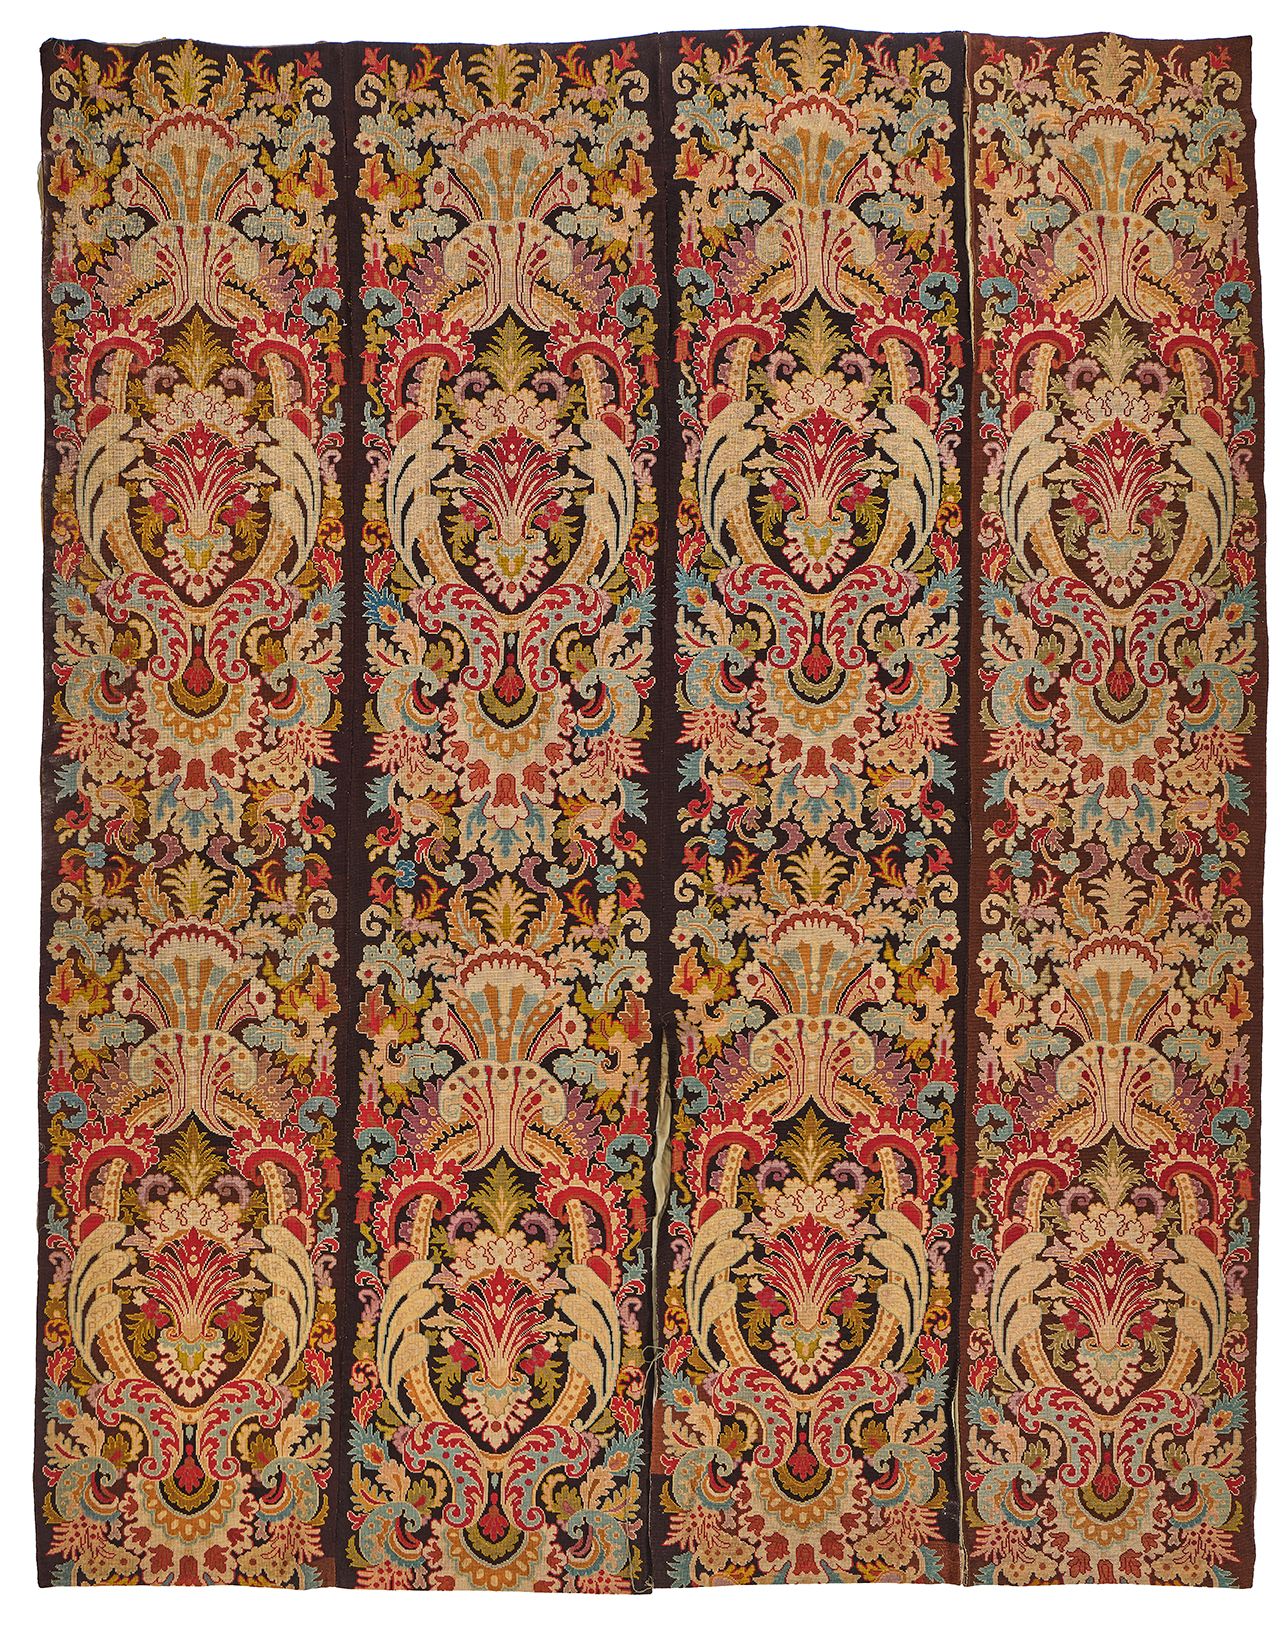 Null 一套四张挂毯，黑色背景上有卷轴、叶子和多色花的织锦。路易十四风格。
高度：2.96米 每块板的宽度：59厘米